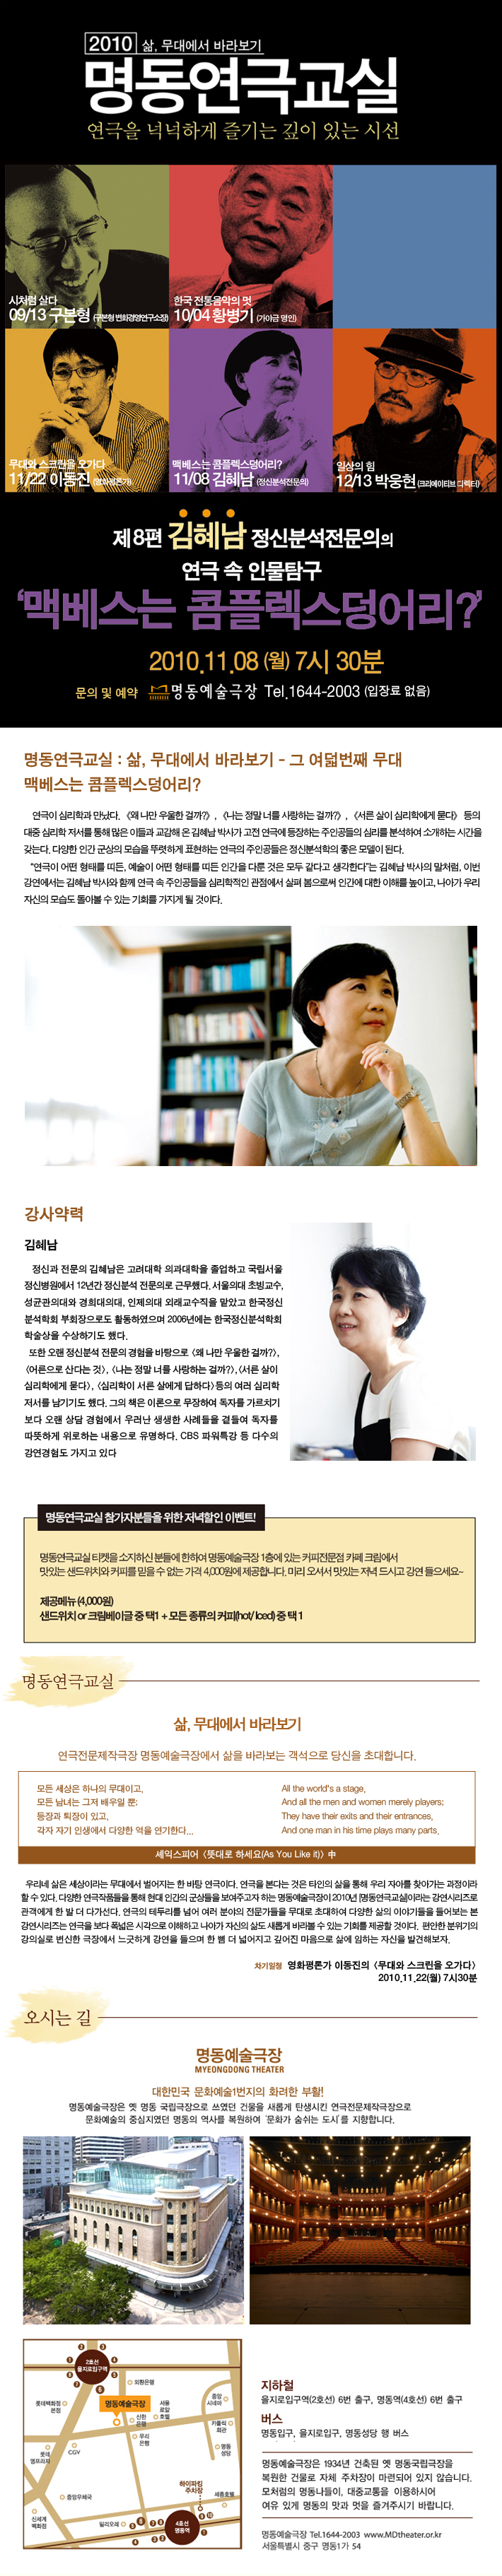 명동연극교실VIII <맥베드는 콤플렉스덩어리-김혜남> 포스터